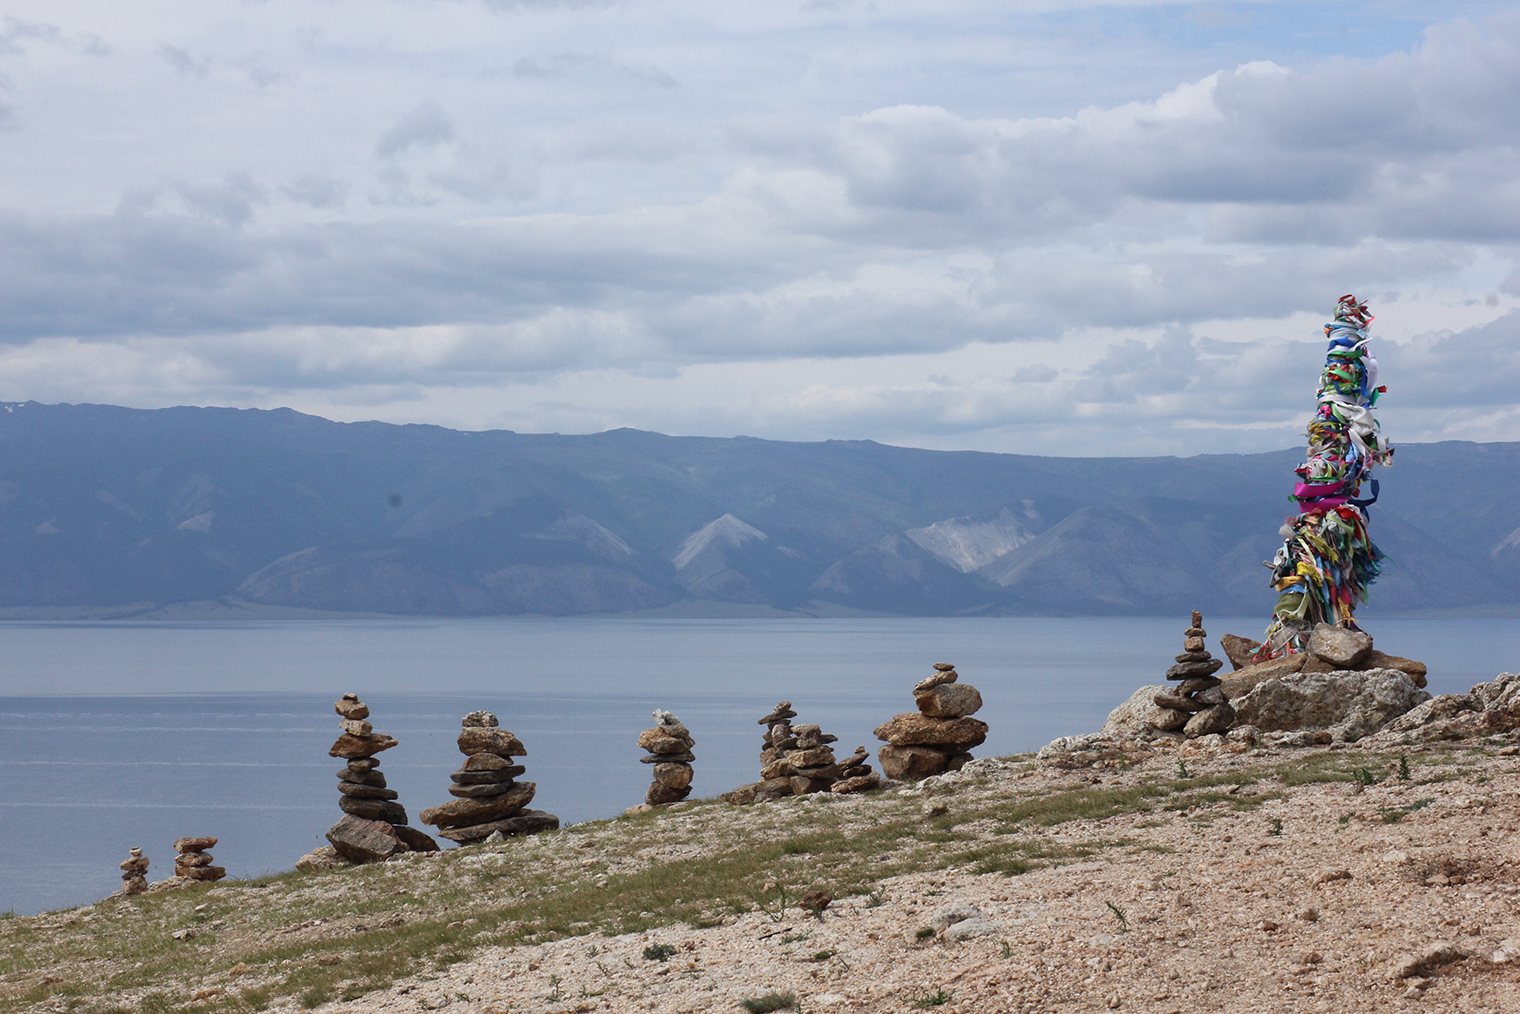 На Байкале принято завязывать хадаки на счастье и складывать пирамидки из камней